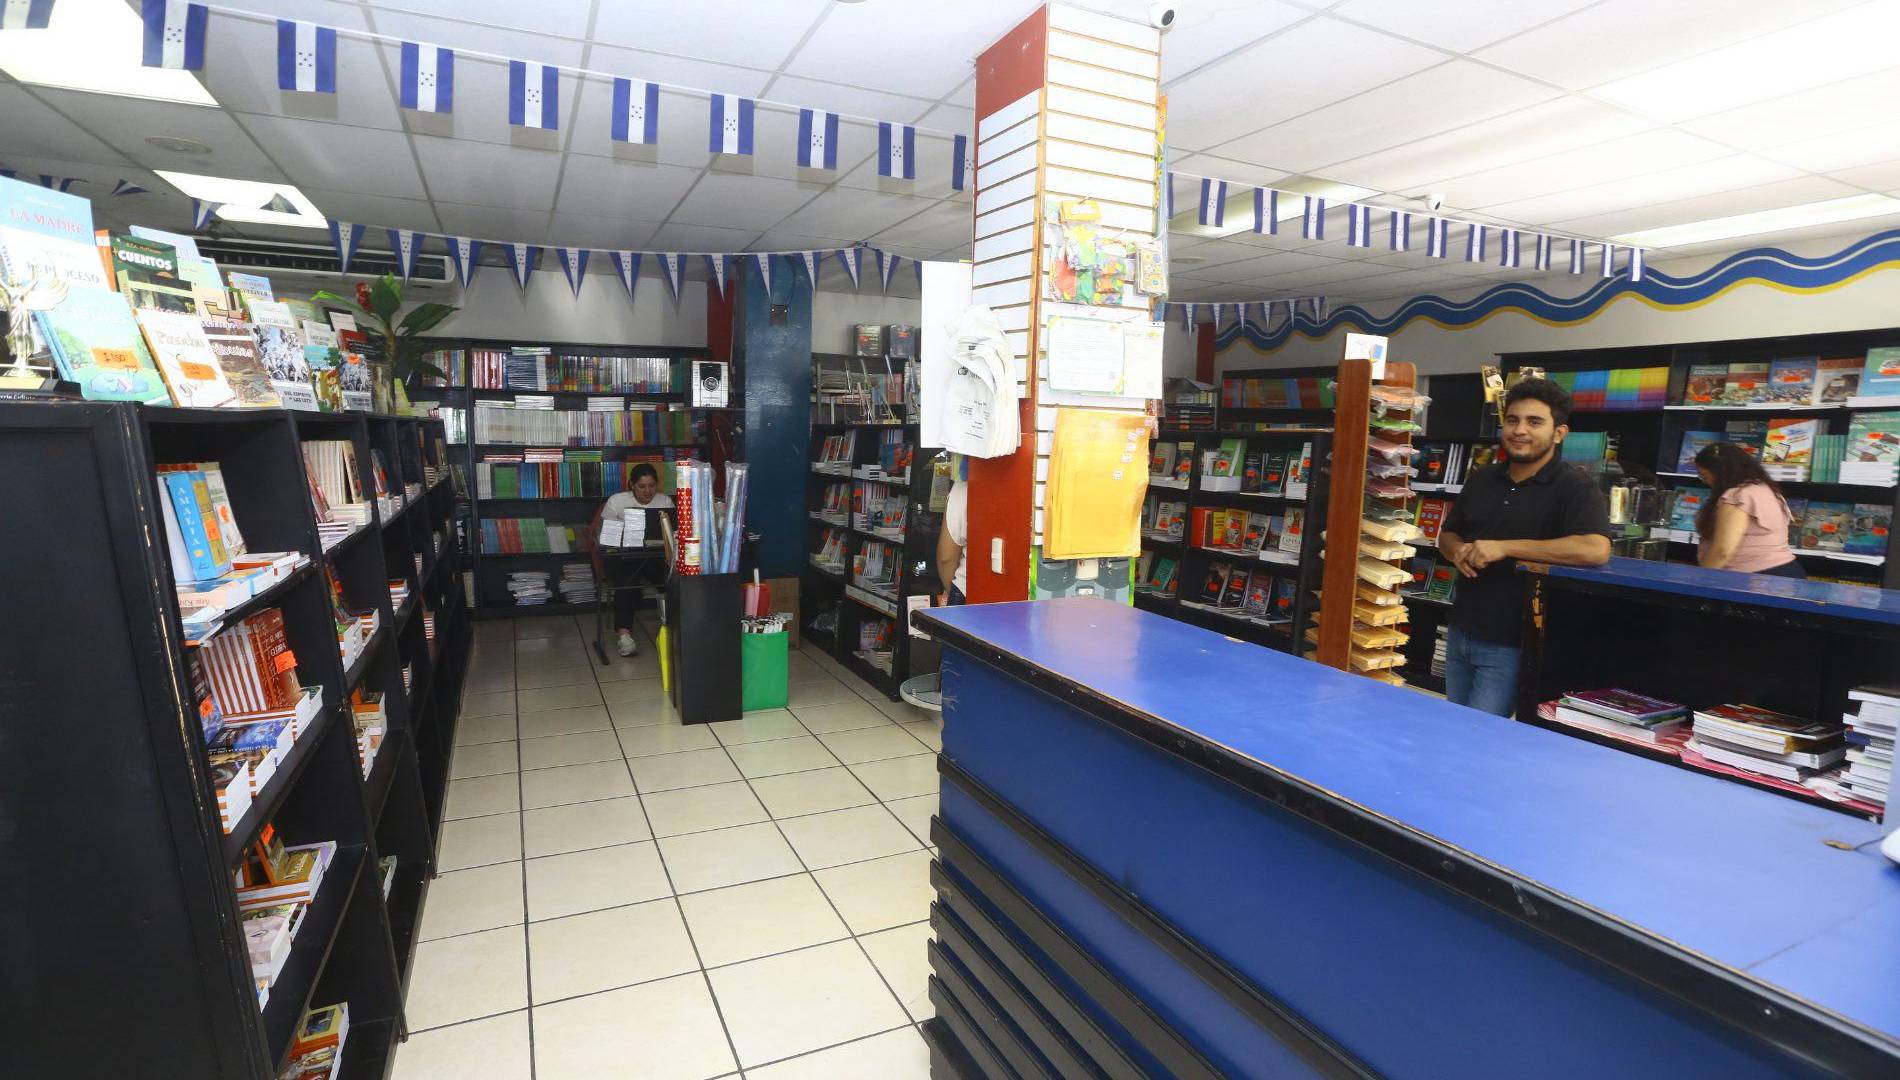 $!En las librerías sampedranas se hallan libros desde 80 lempiras hasta 600 lempiras o más. La variedad de precios en el mercado editorial y permite a los lectores elegir libros que se ajusten a sus preferencias y presupuesto.